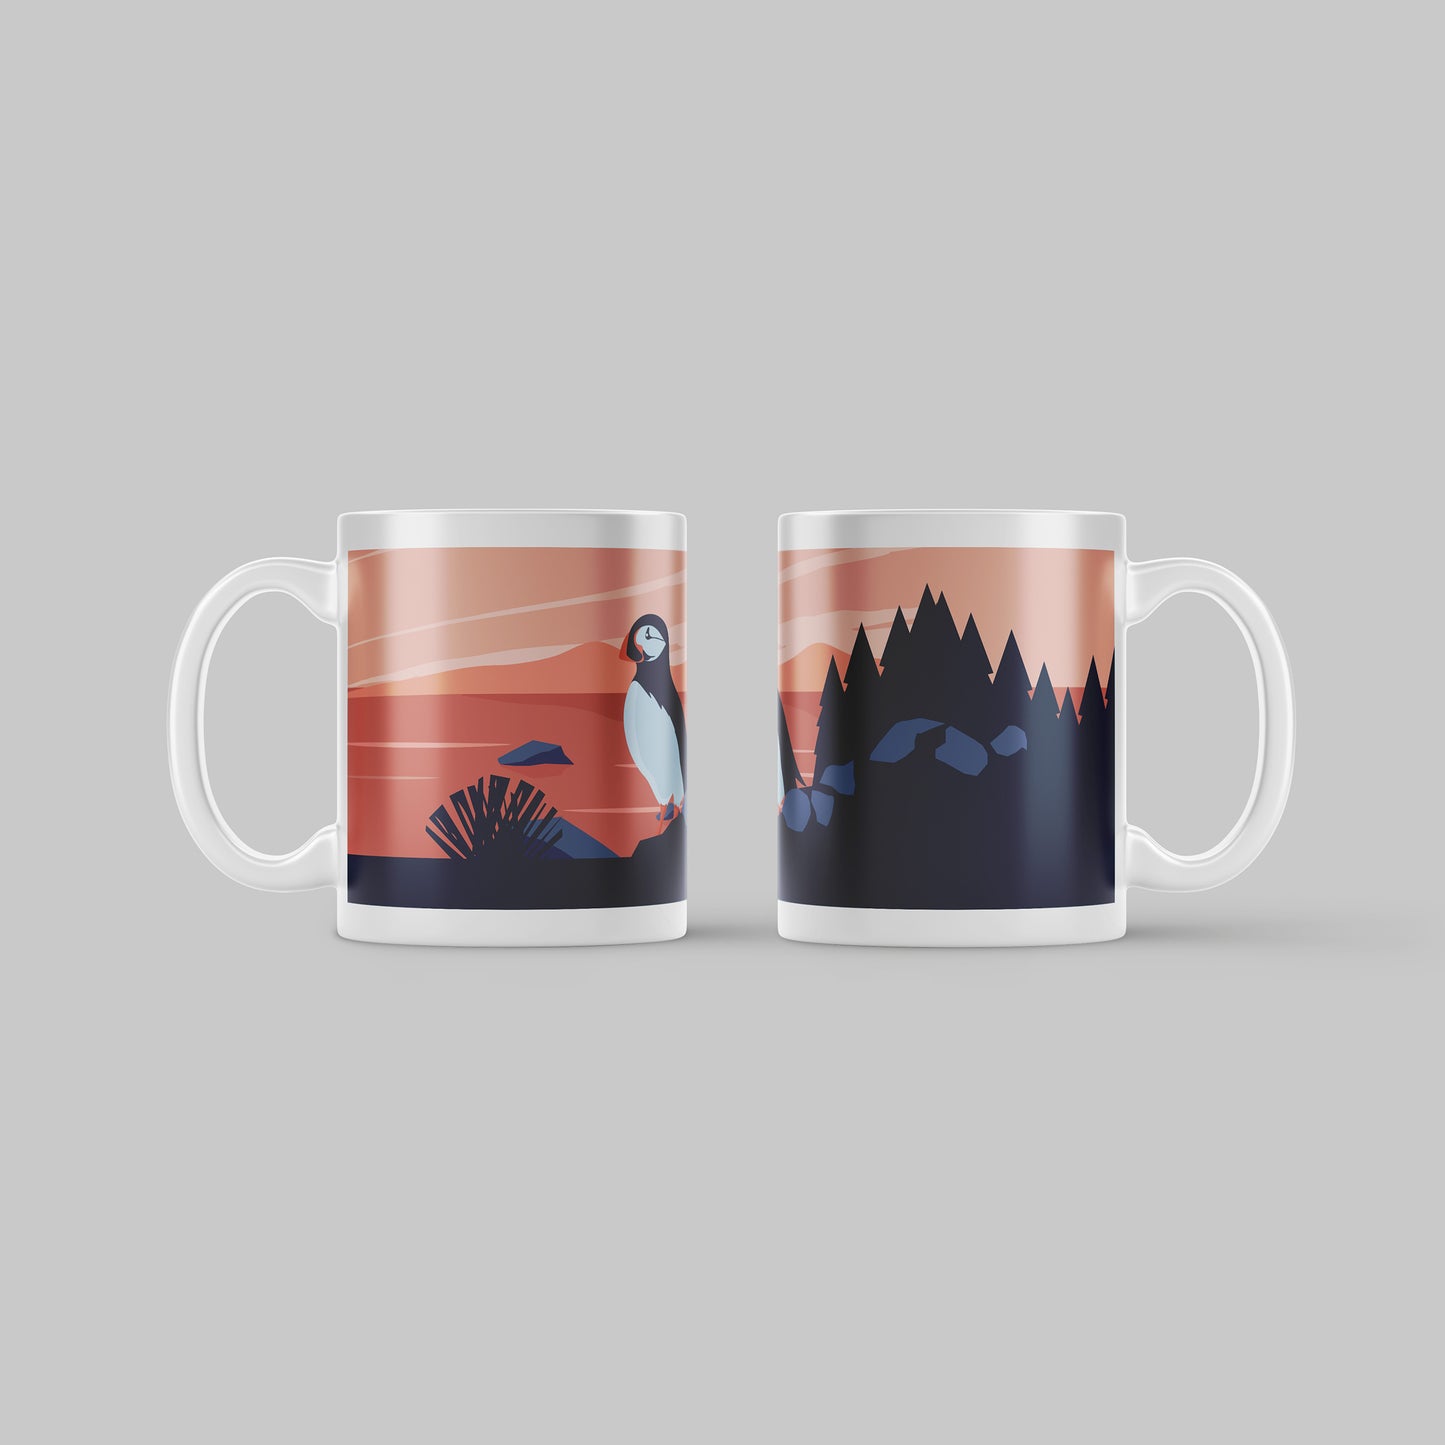 Printed Mugs